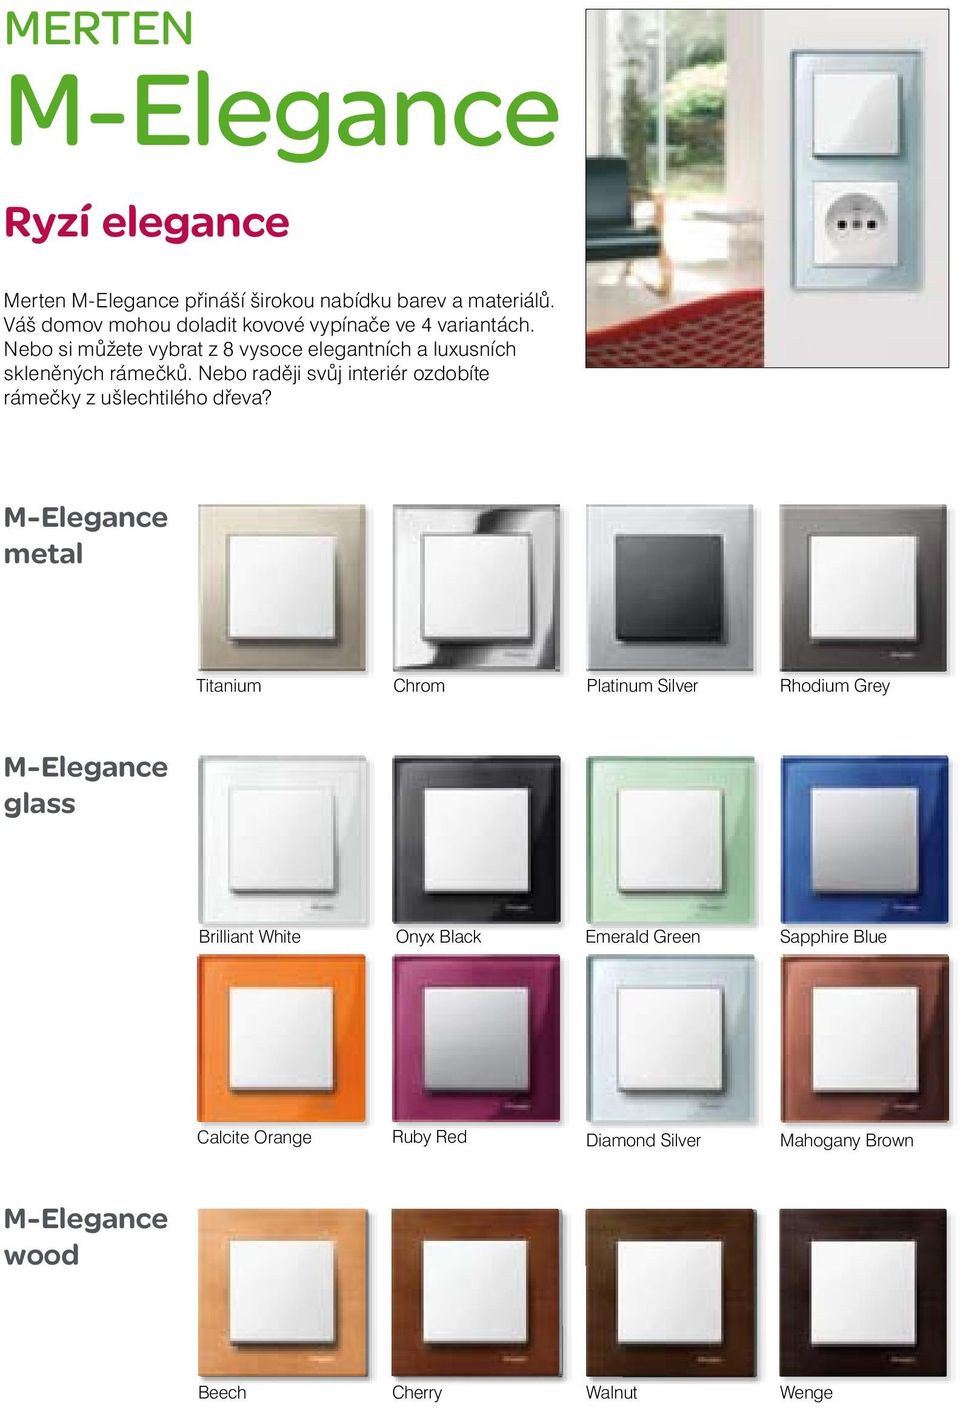 Nebo si můžete vybrat z 8 vysoce elegantních a luxusních skleněných rámečků.